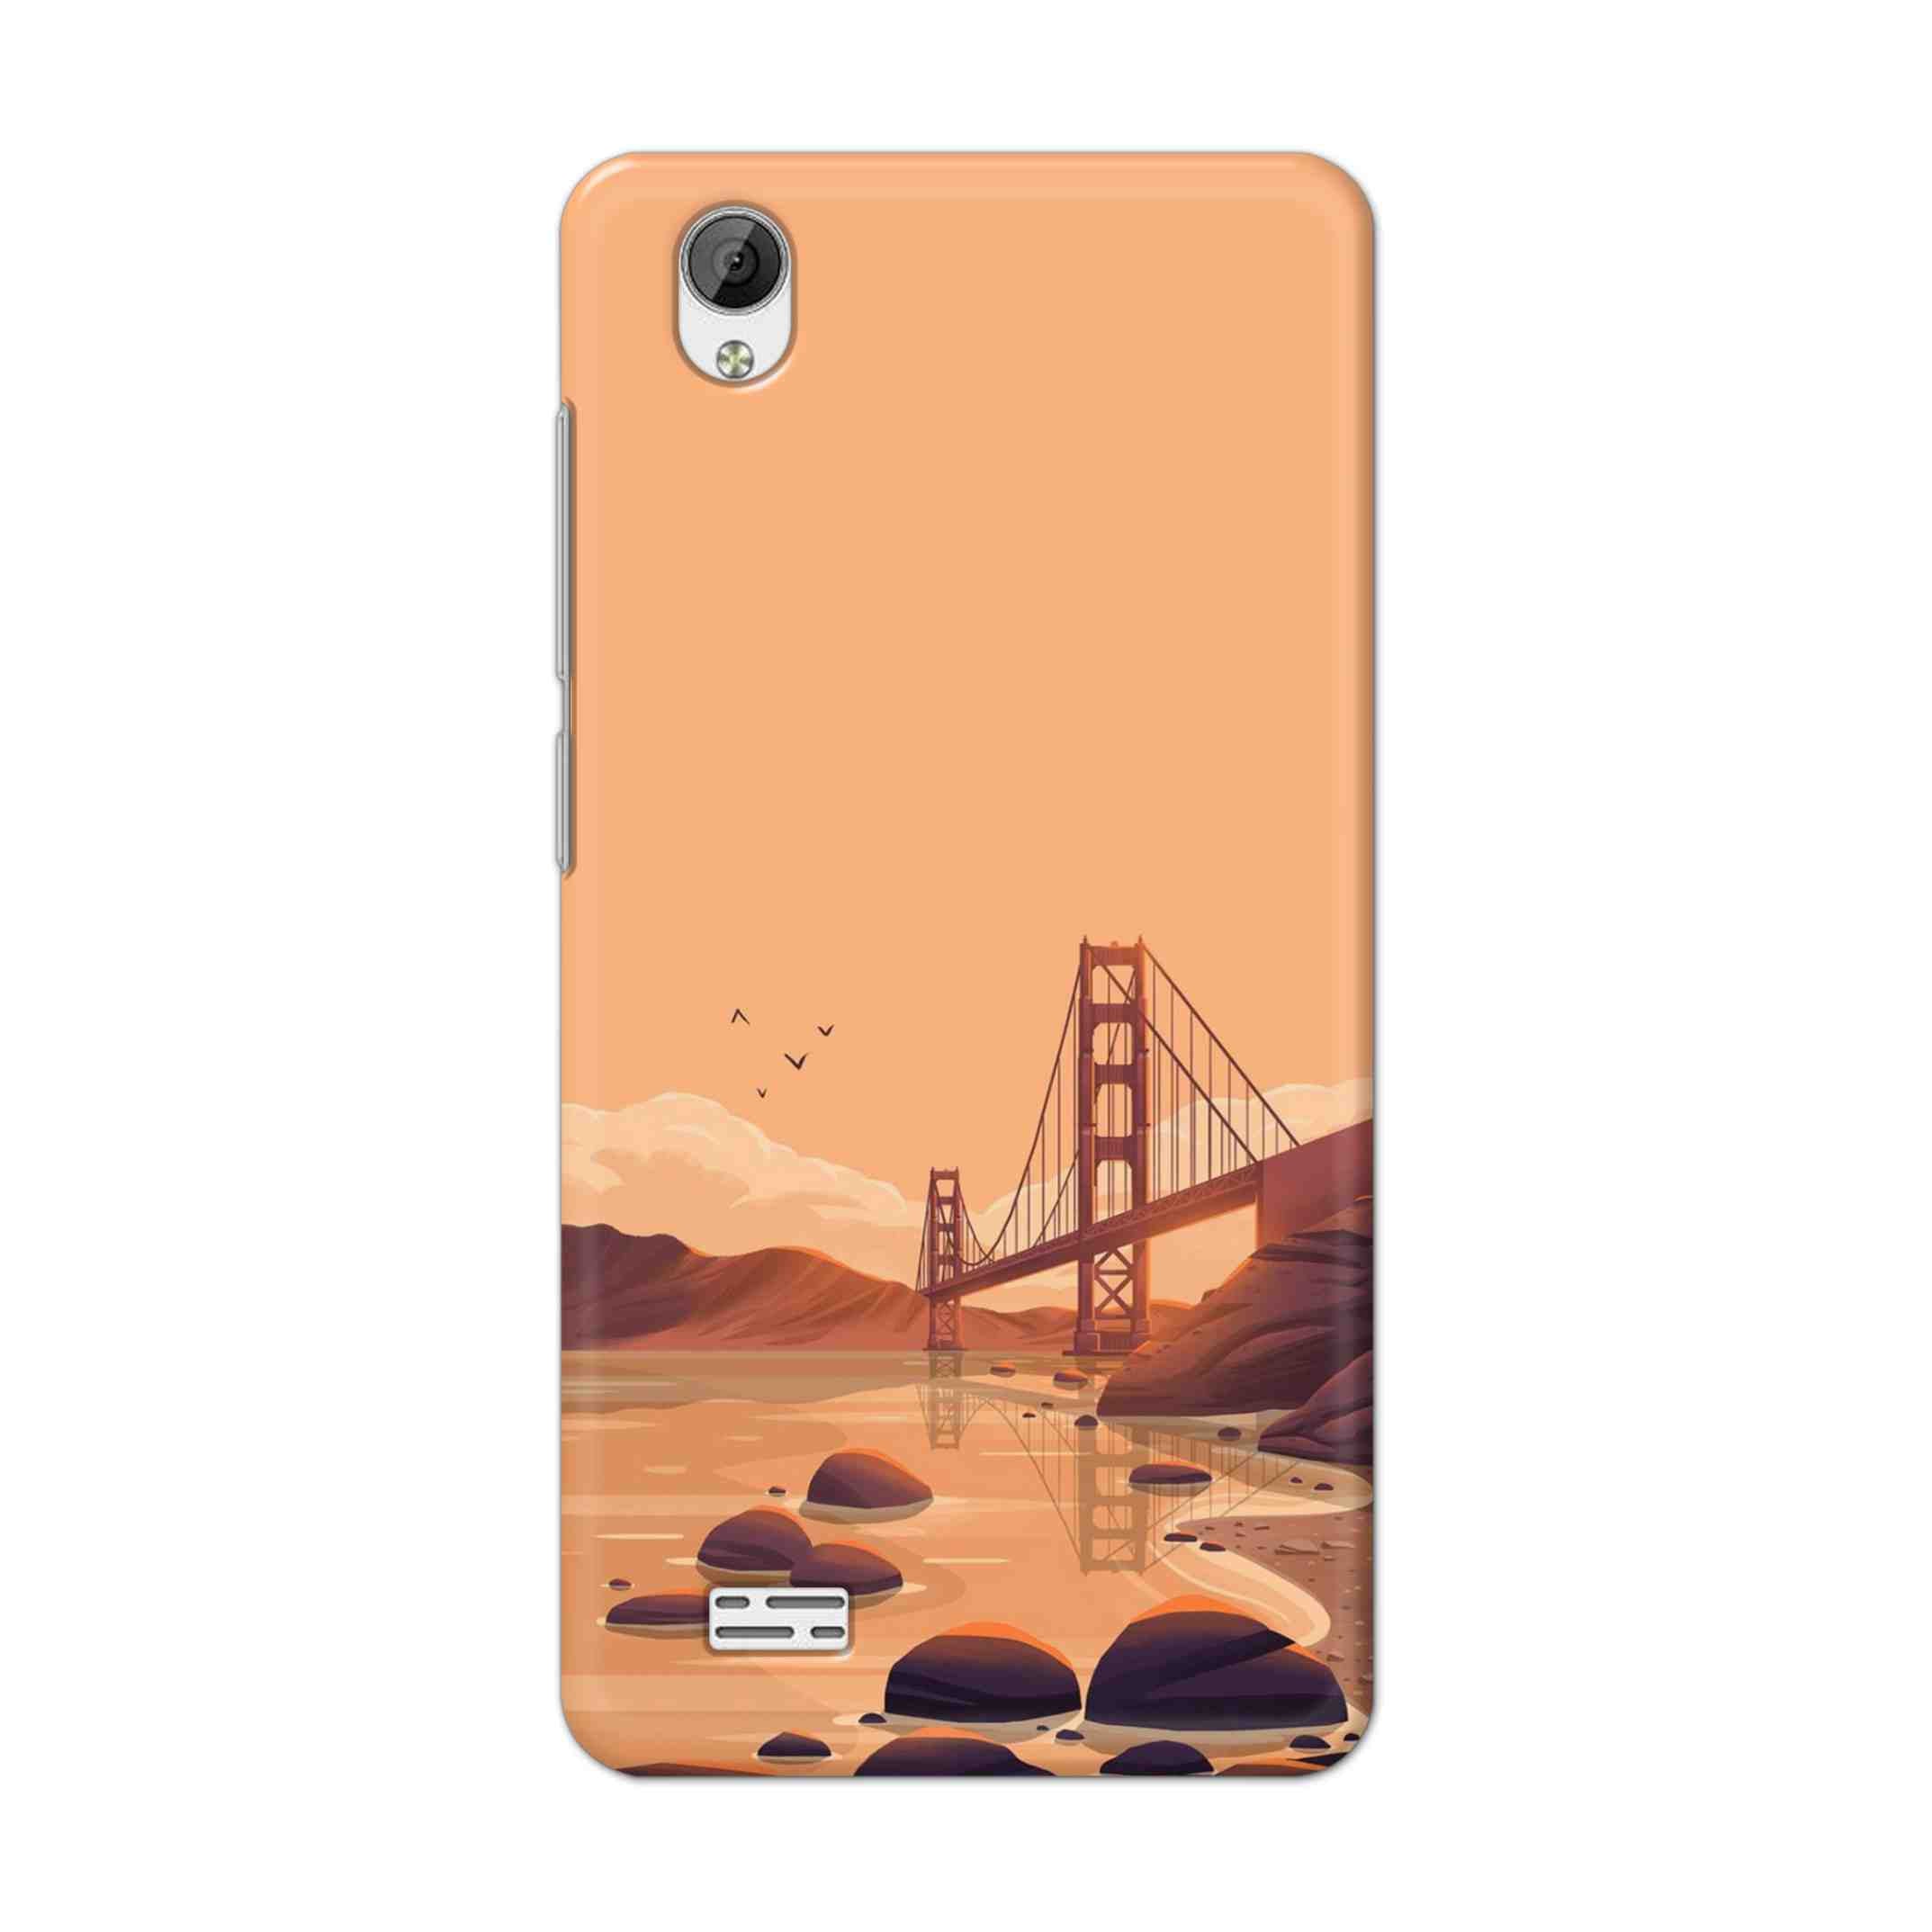 Buy San Francisco Hard Back Mobile Phone Case Cover For Vivo Y31 Online